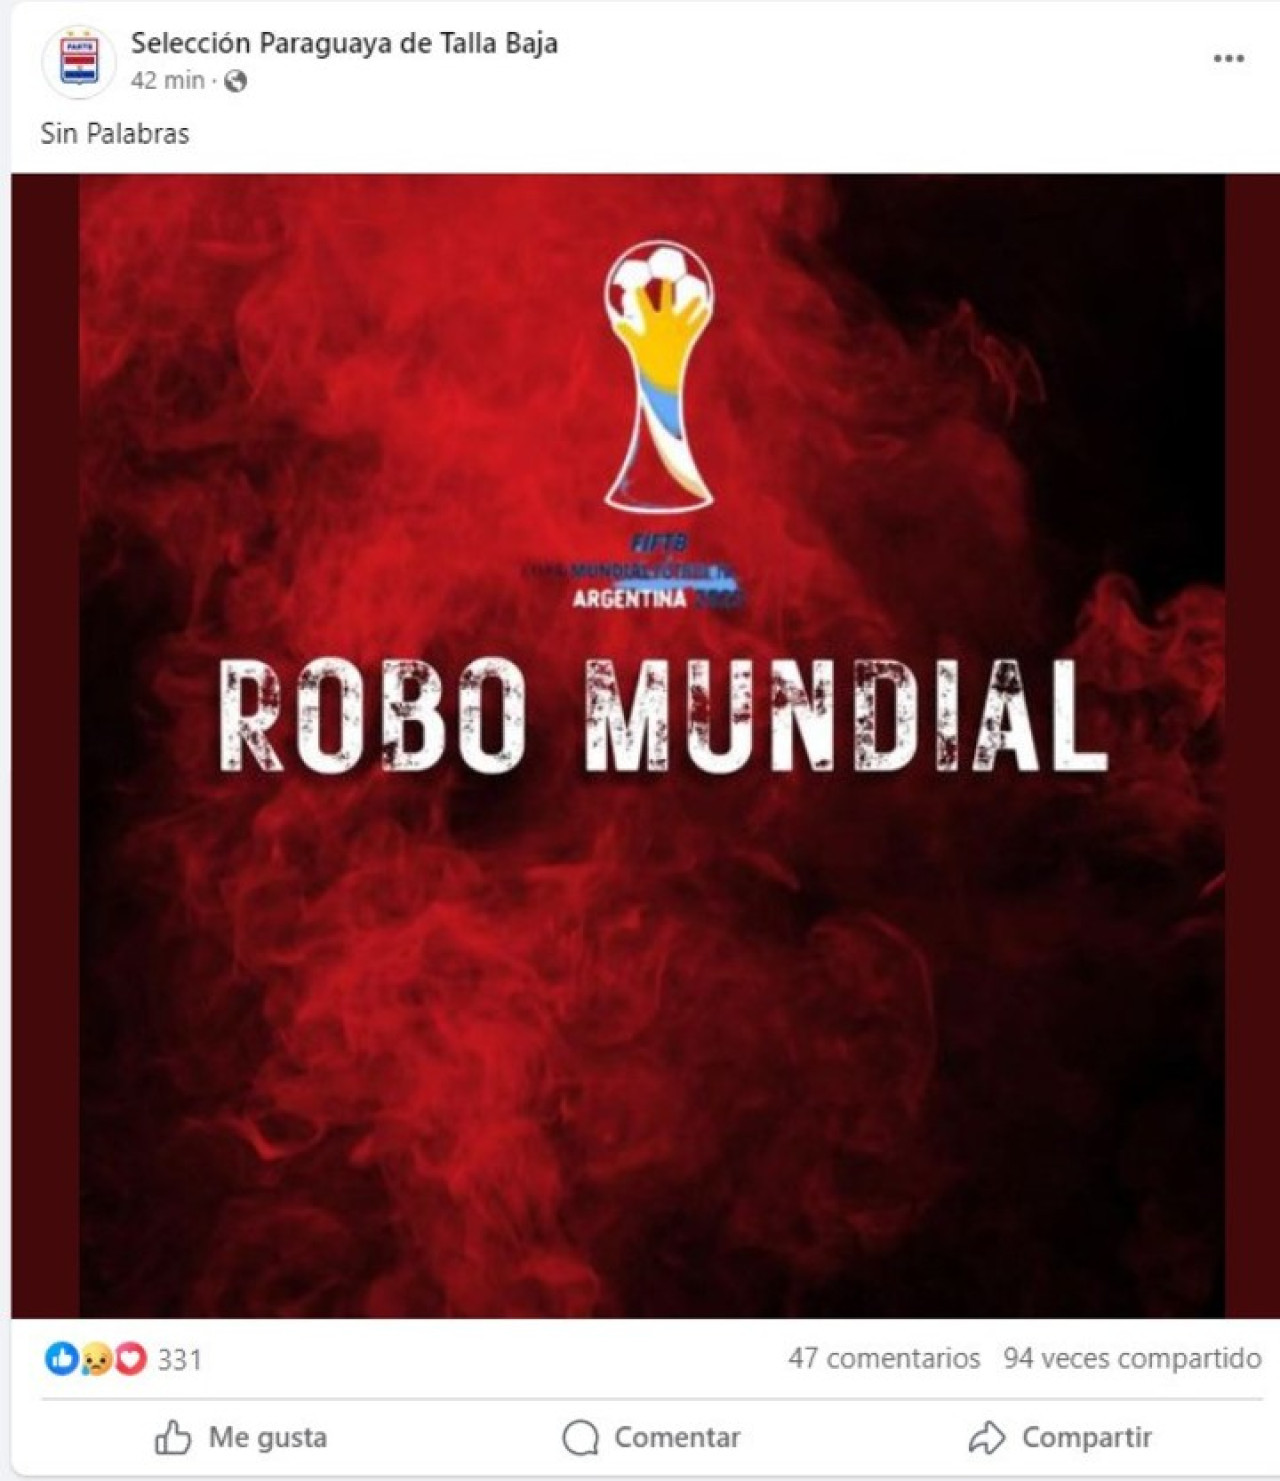 La selección de Paraguay denuncio un "robo mundial". Foto: Facebook.